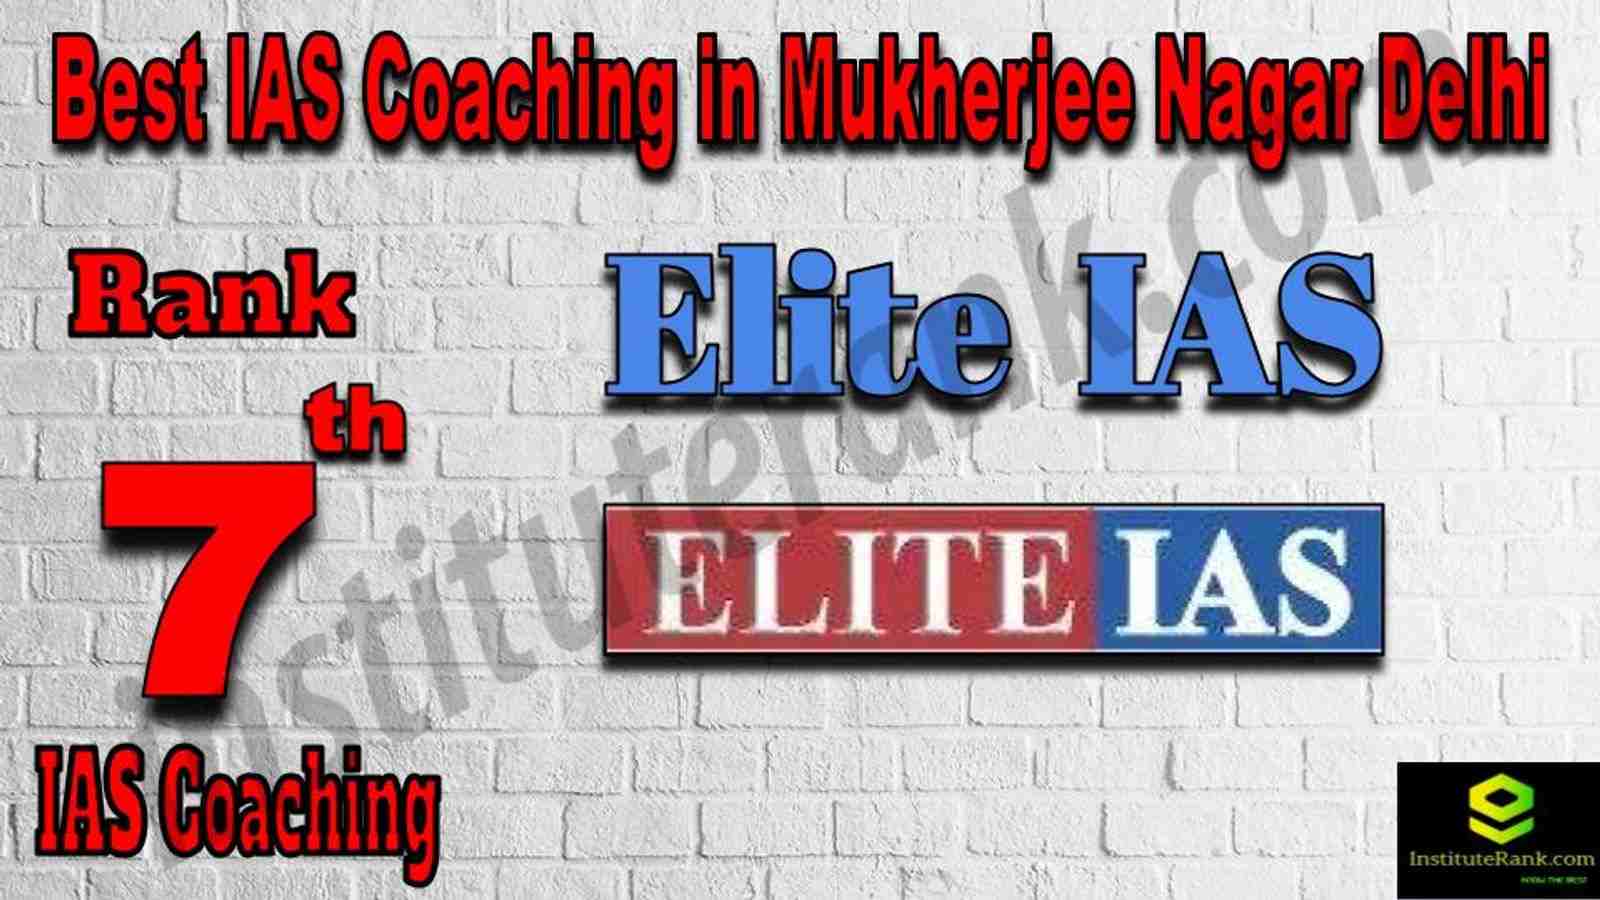 7th Best IAS Coaching in Mukherjee Nagar 